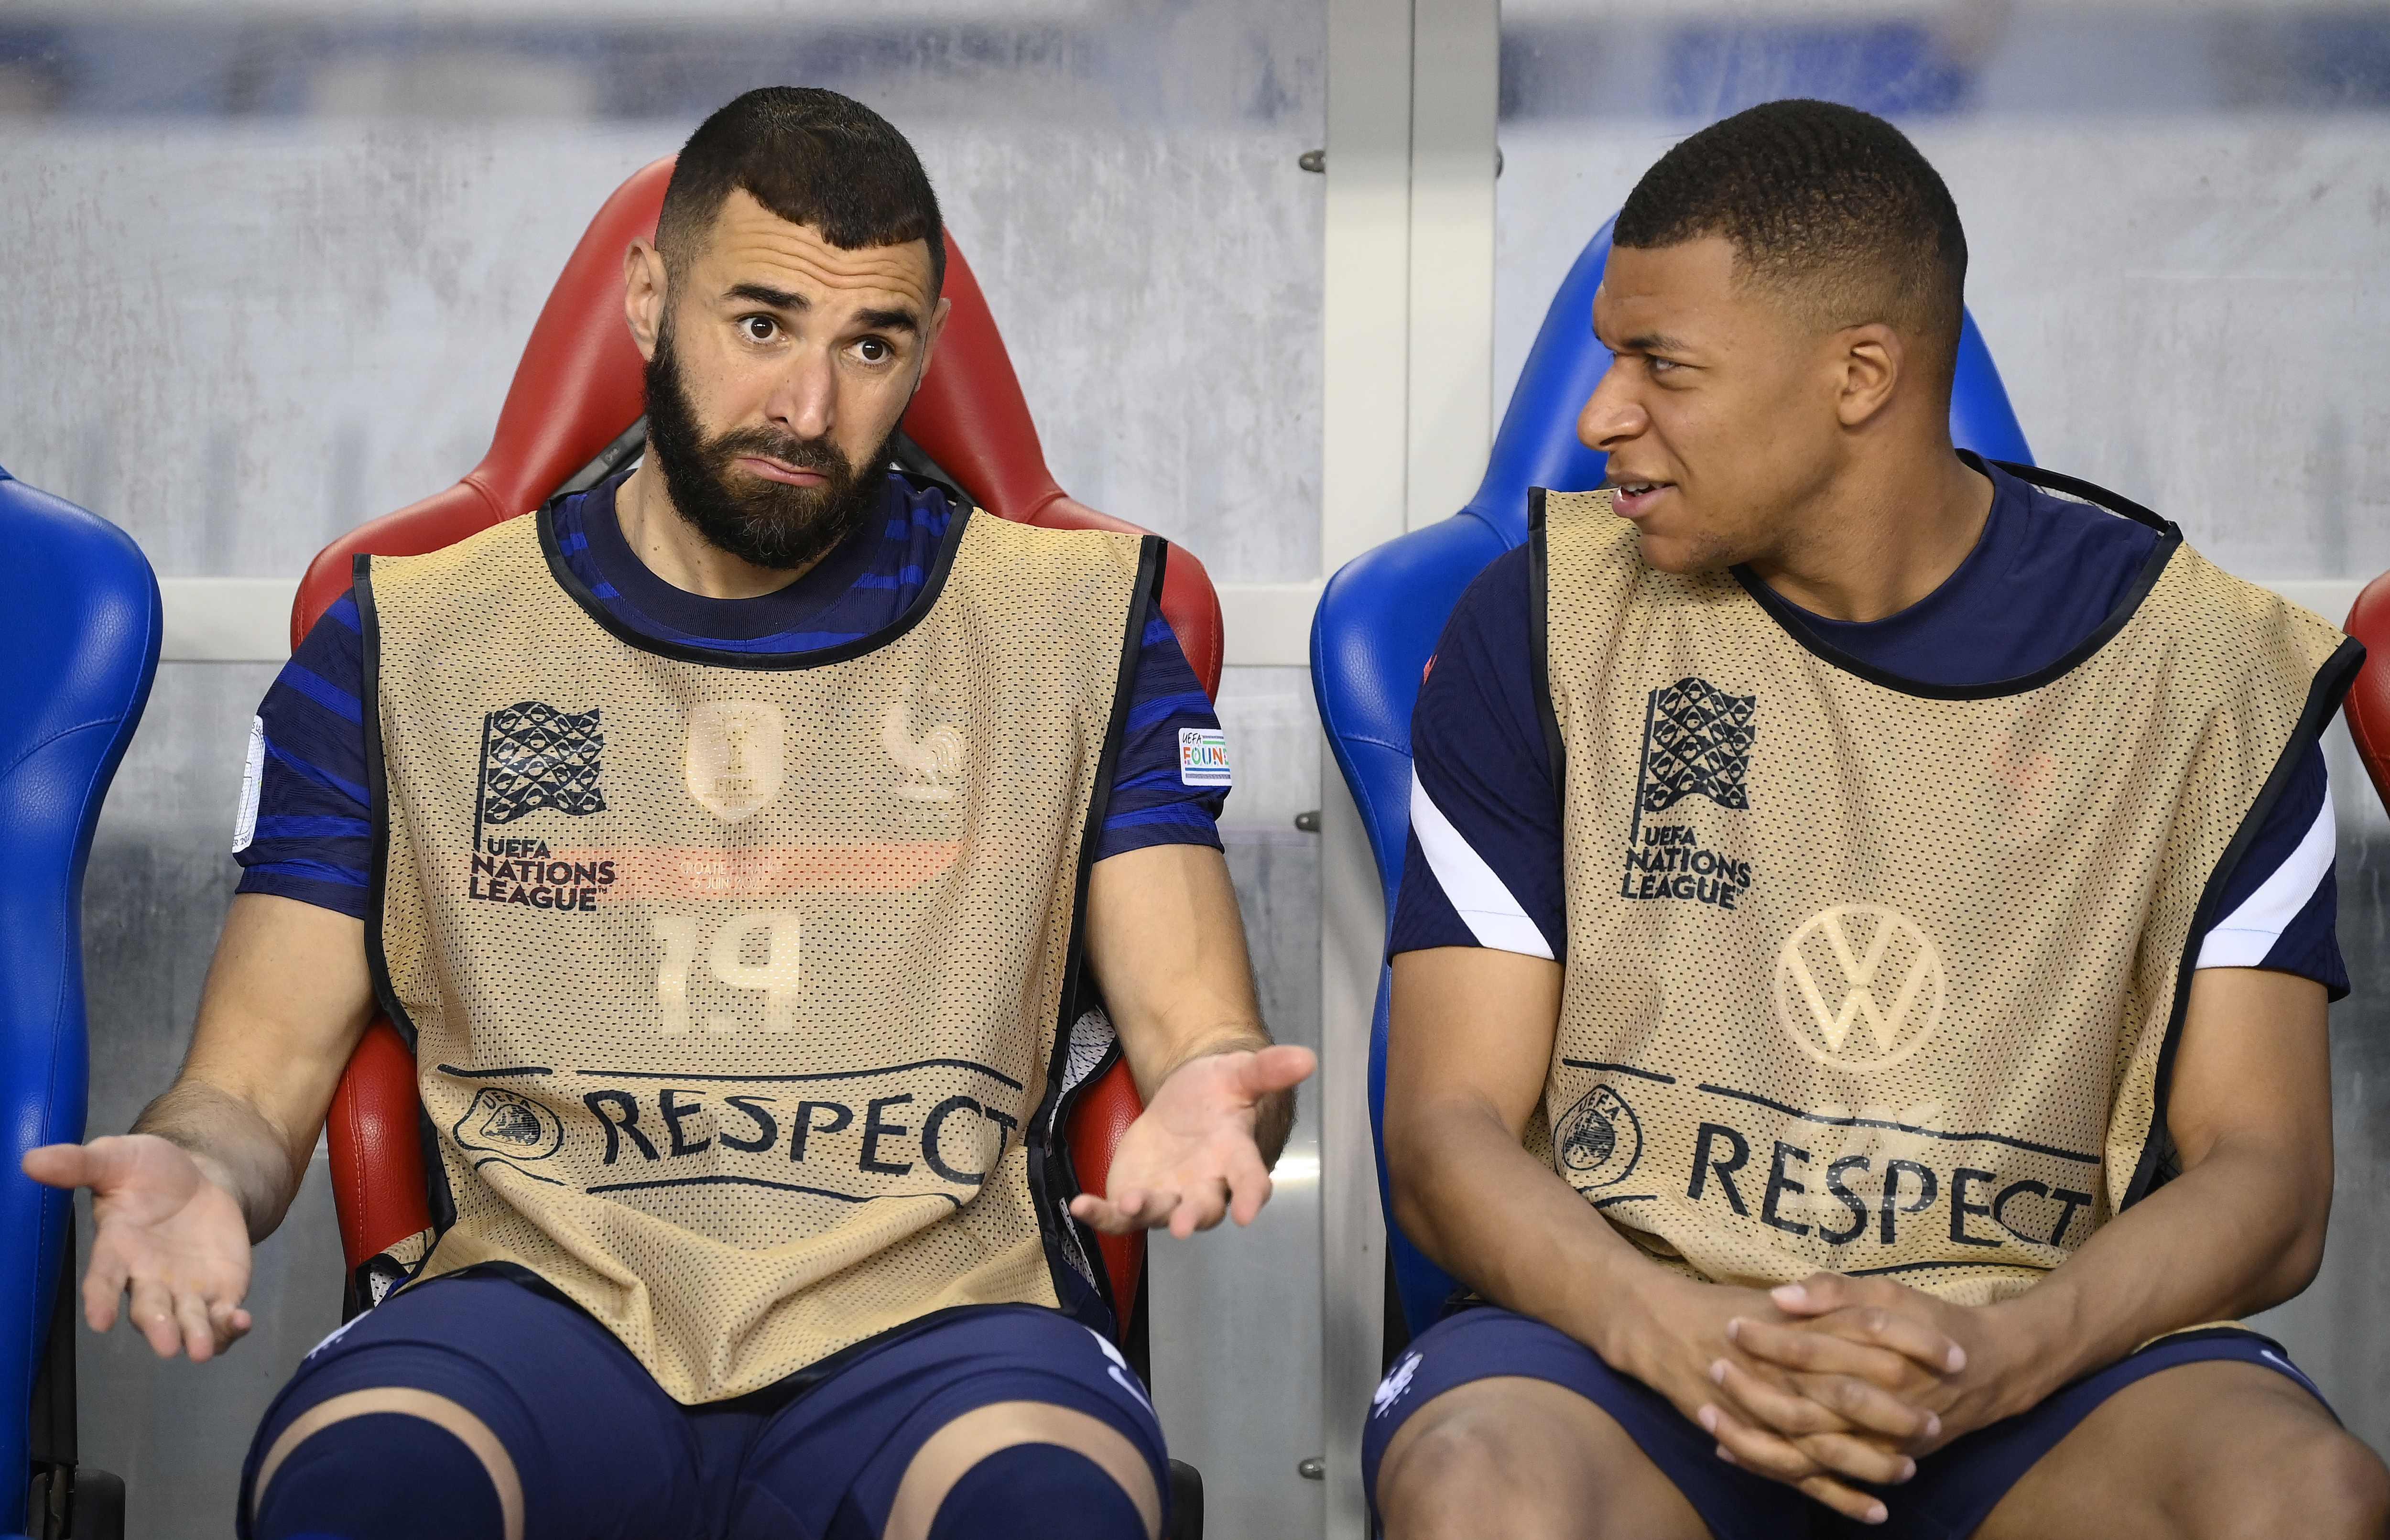 Diego Luganodan Karim Benzema ve Fransa Milli Takımı ile ilgili büyük iddia